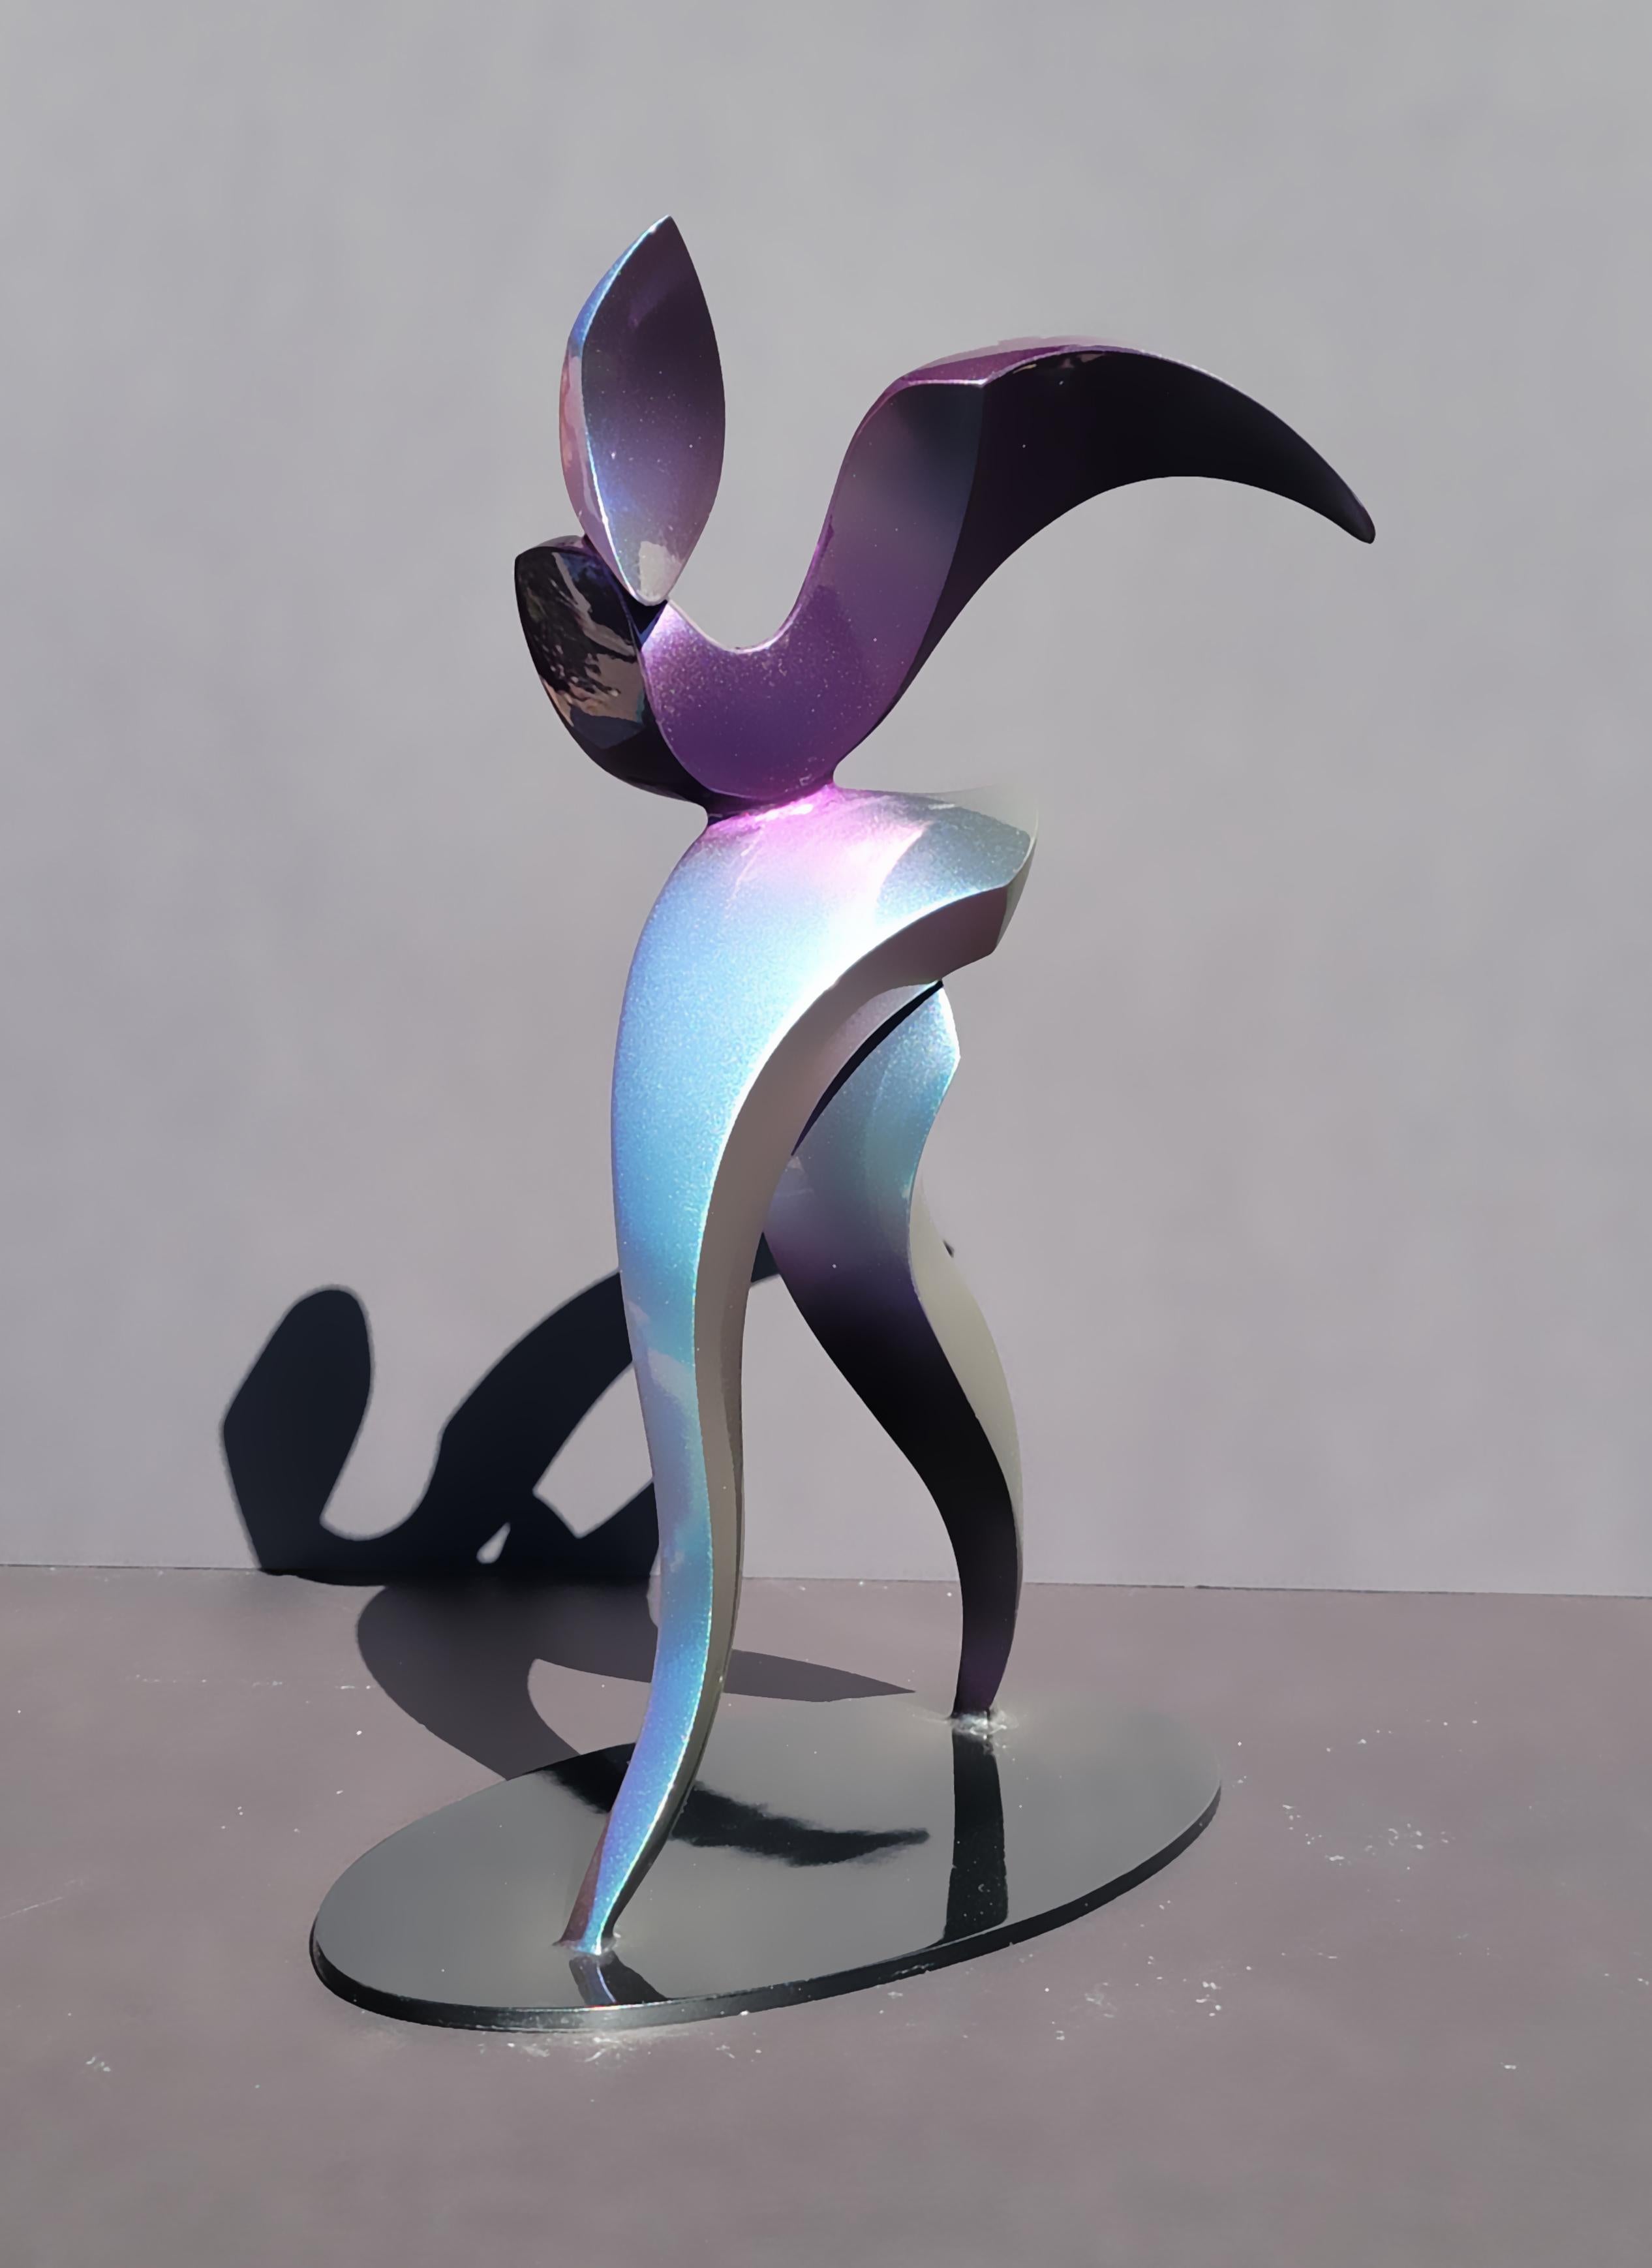 Coulée en aluminium et peinte en magenta-jade, cette figure biomorphique semble en mouvement et sa couleur varie en fonction du point de vue et de l'éclairage ambiant. Il s'agit d'une édition de 12 exemplaires et est disponible dans d'autres